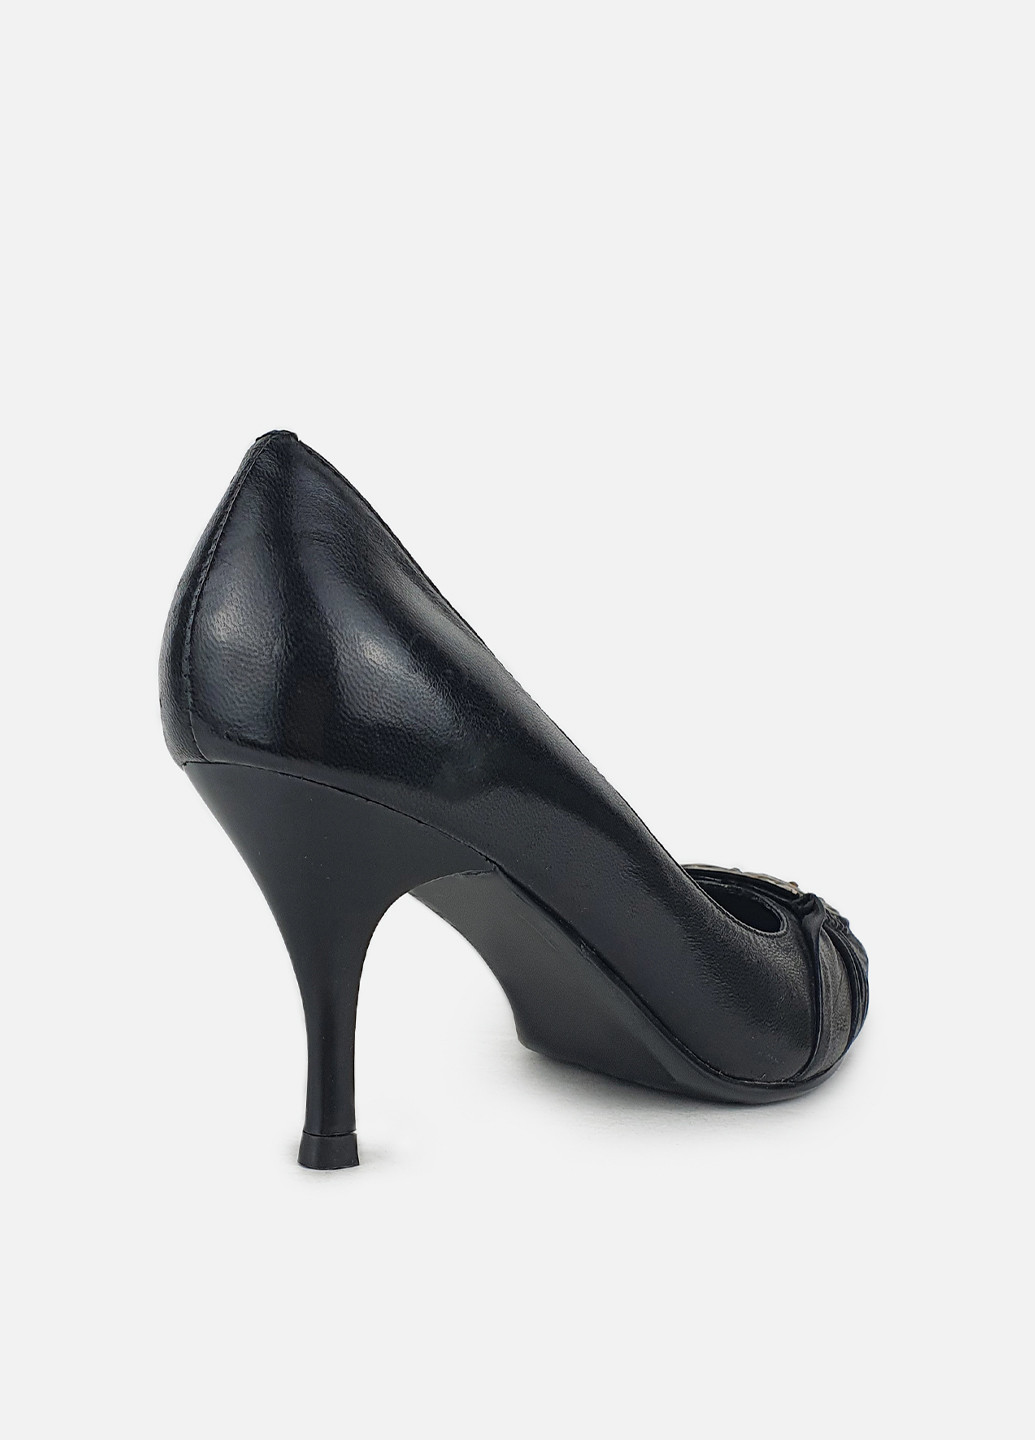 Женские туфли с острым носком черные кожаные на среднем каблуке Brocoli